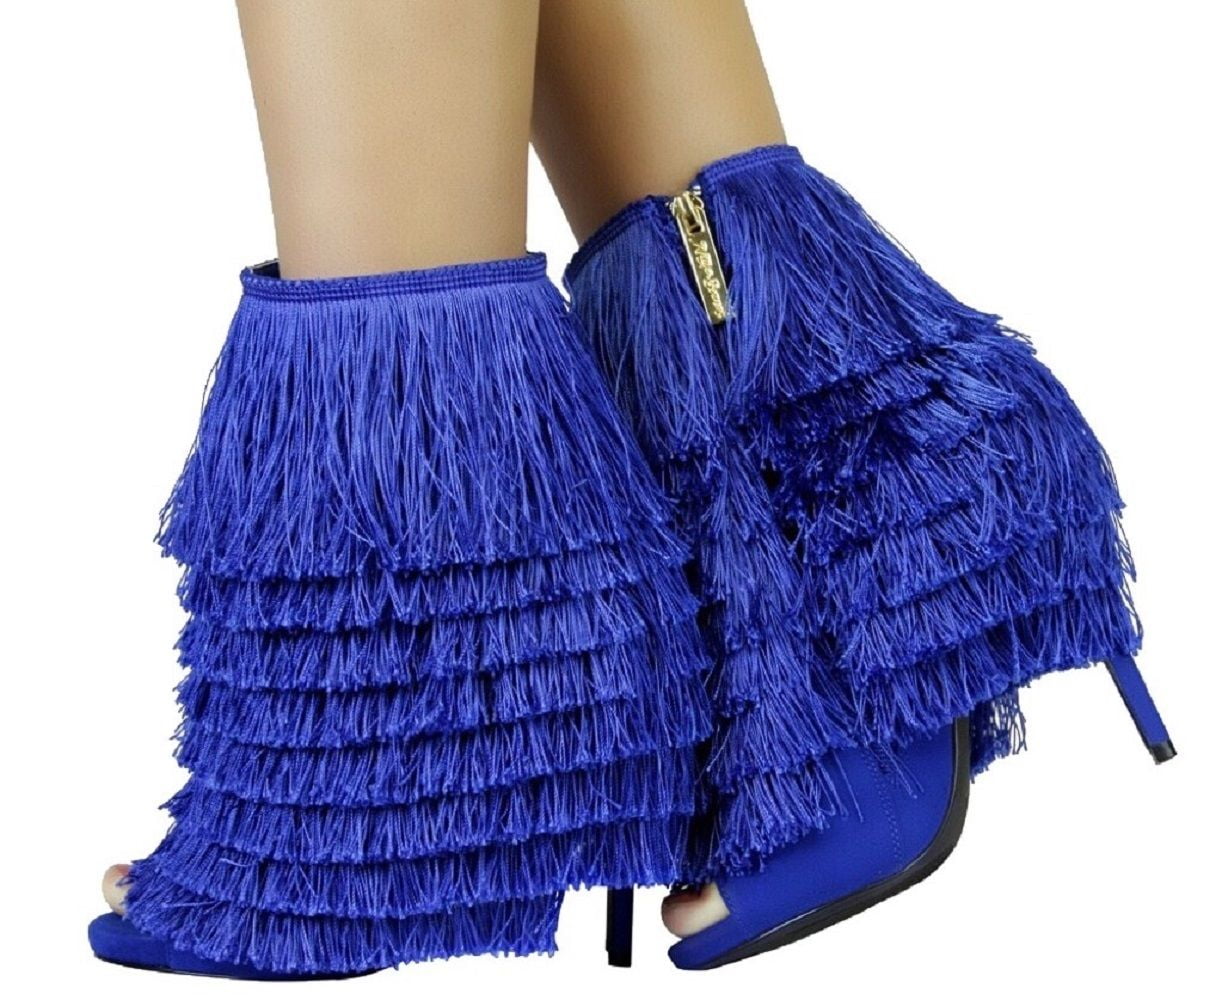 royal blue fringe heels